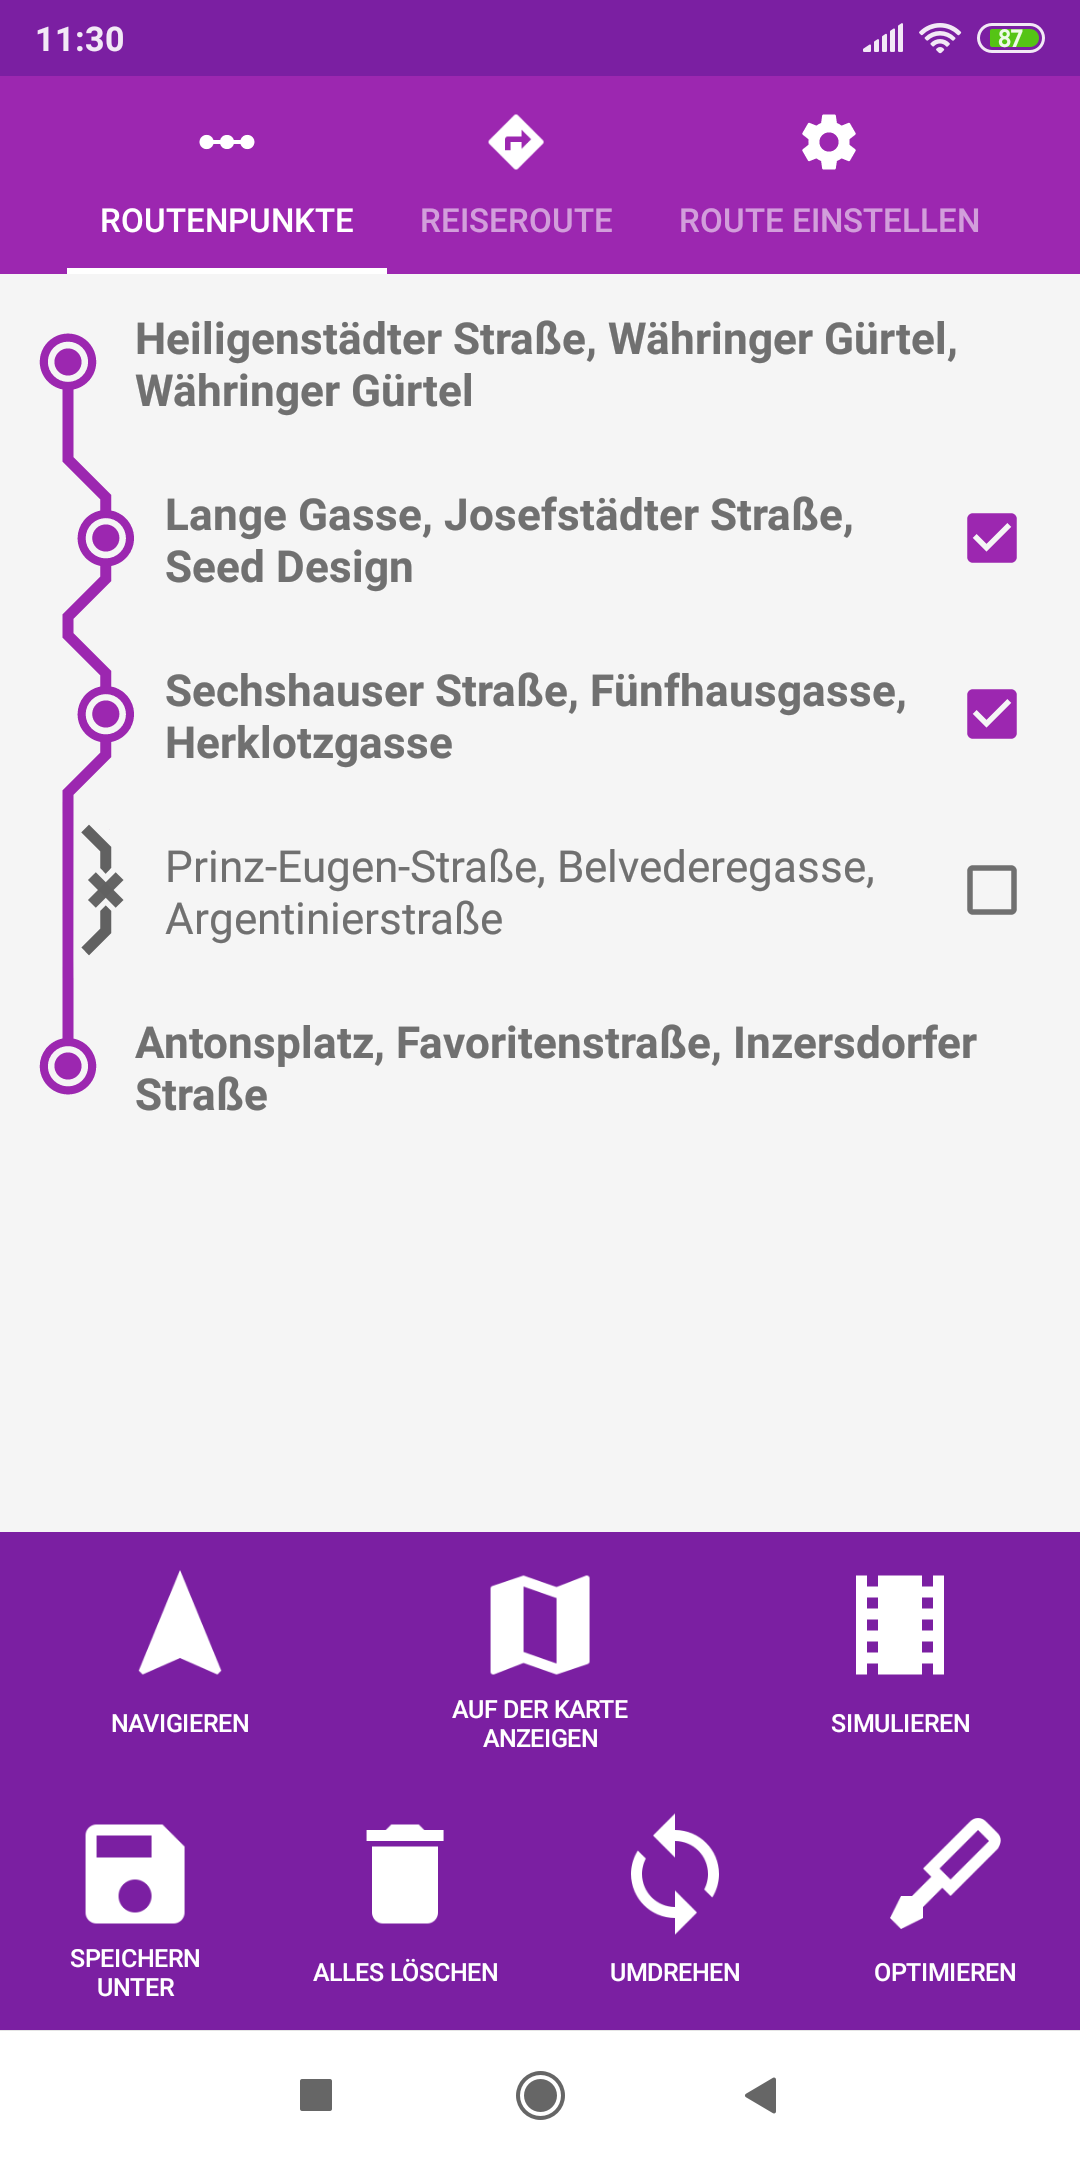 mapFactor Navigator 5.0 - Routing points - purple app colour theme